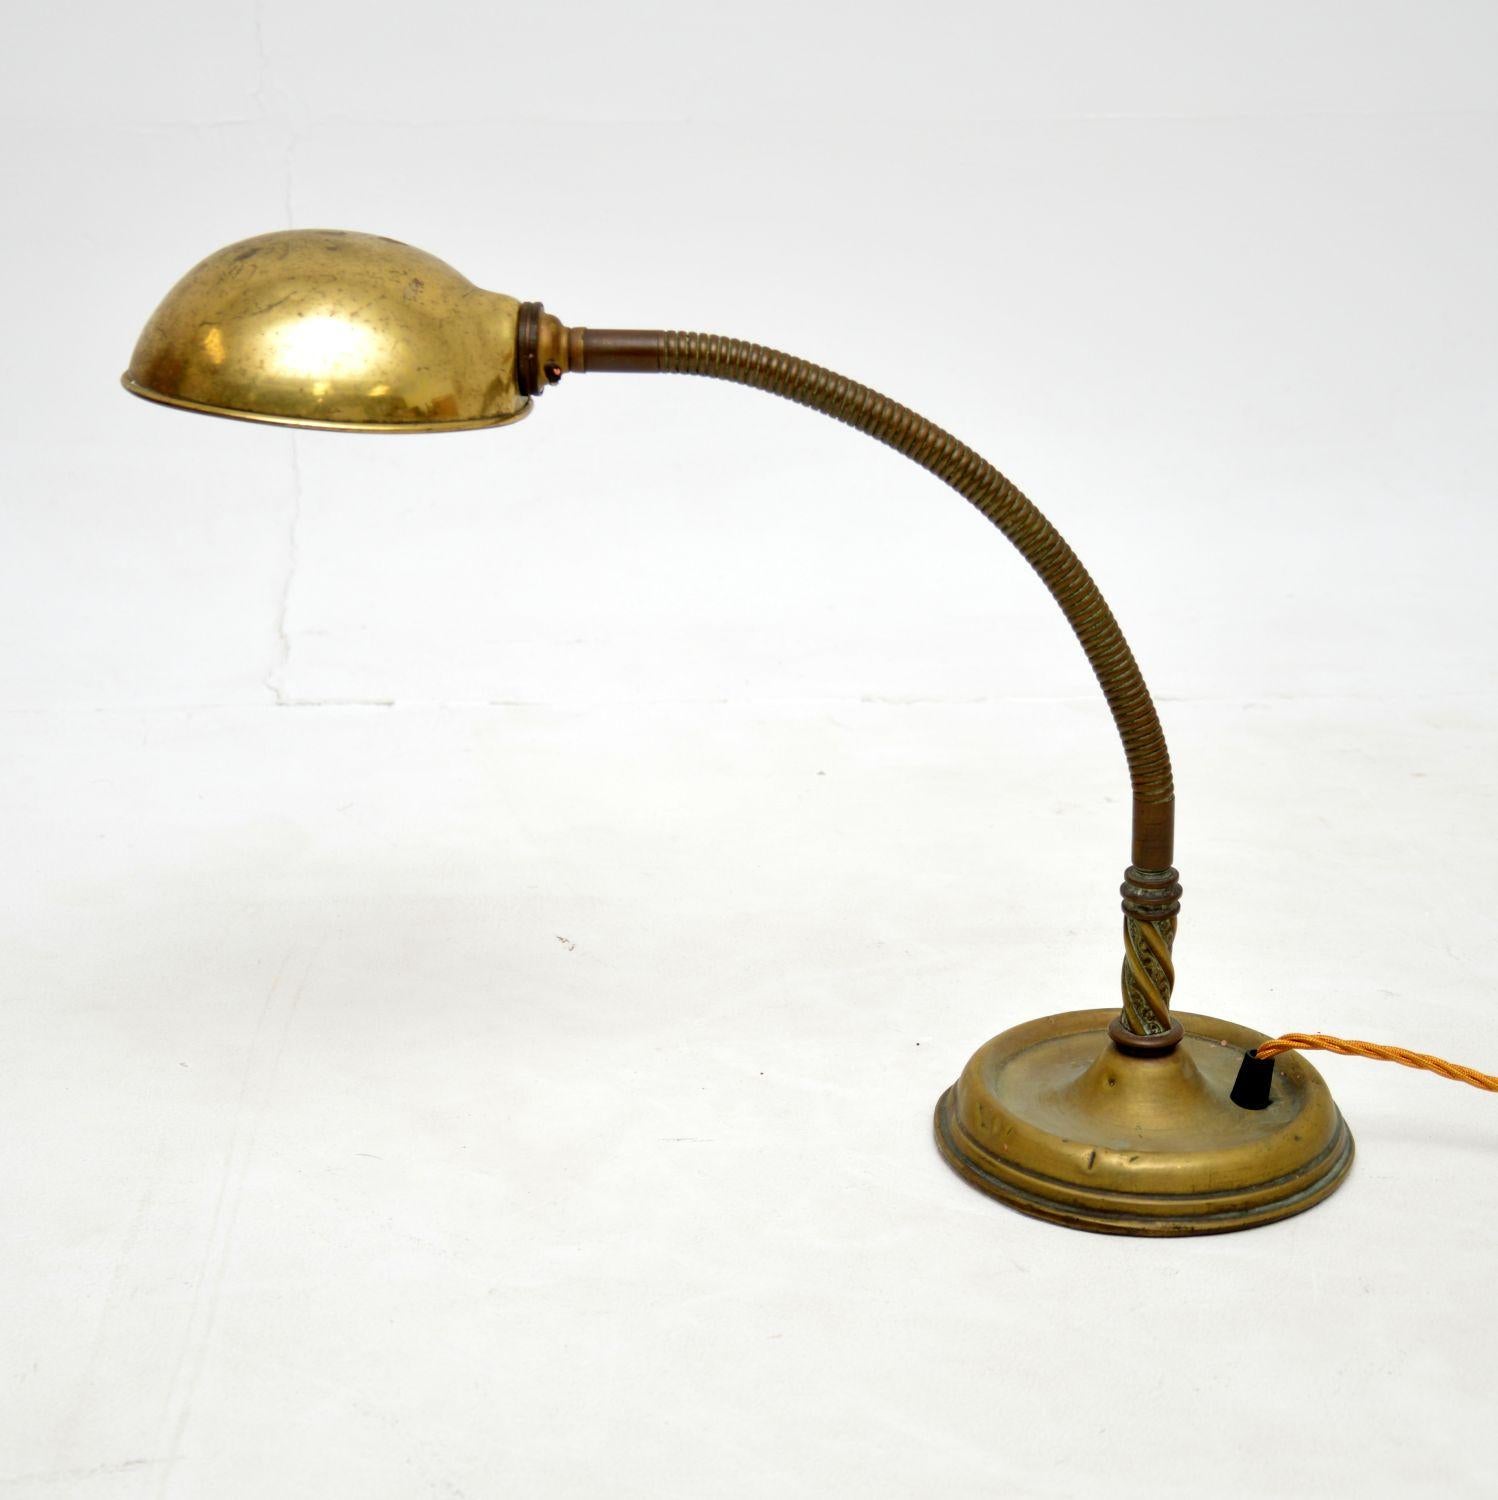 Une charmante lampe de bureau ancienne en laiton massif, fabriquée en Angleterre et datant de la période 1900-1920.

Il est très bien fait, avec un col de cygne articulé qui peut être ajusté à différents angles.

Le laiton a une patine absolument